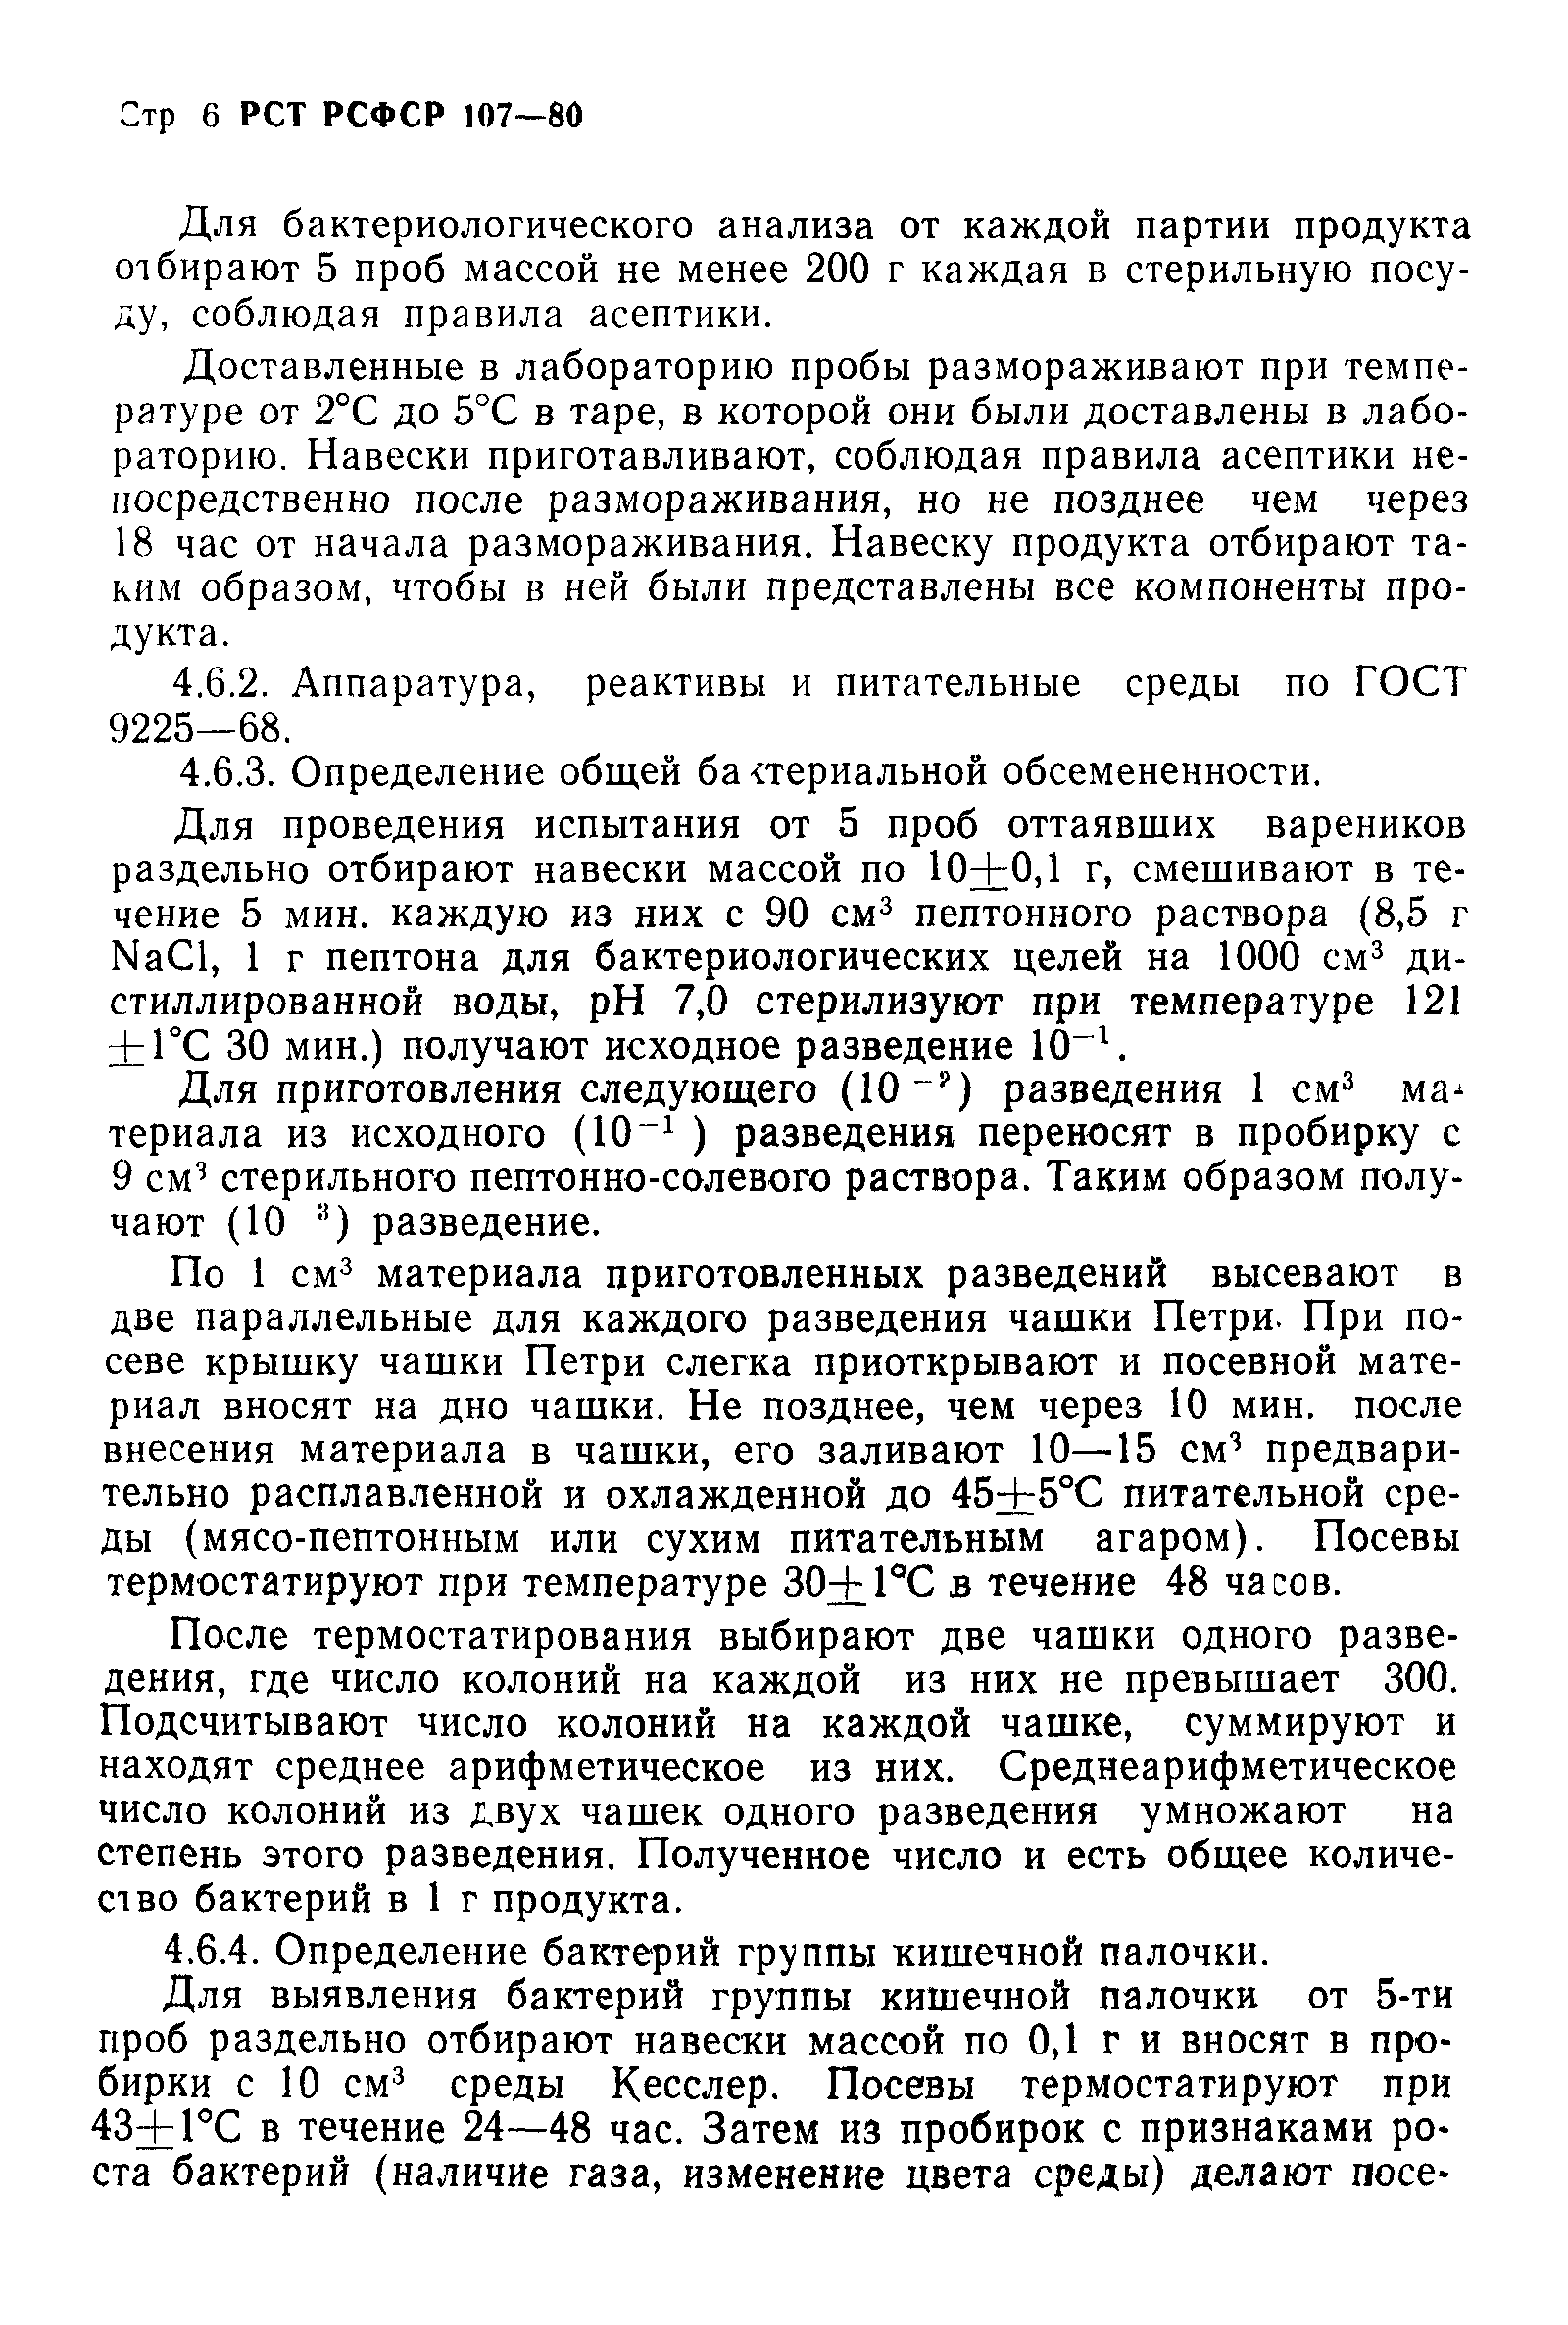 РСТ РСФСР 107-80